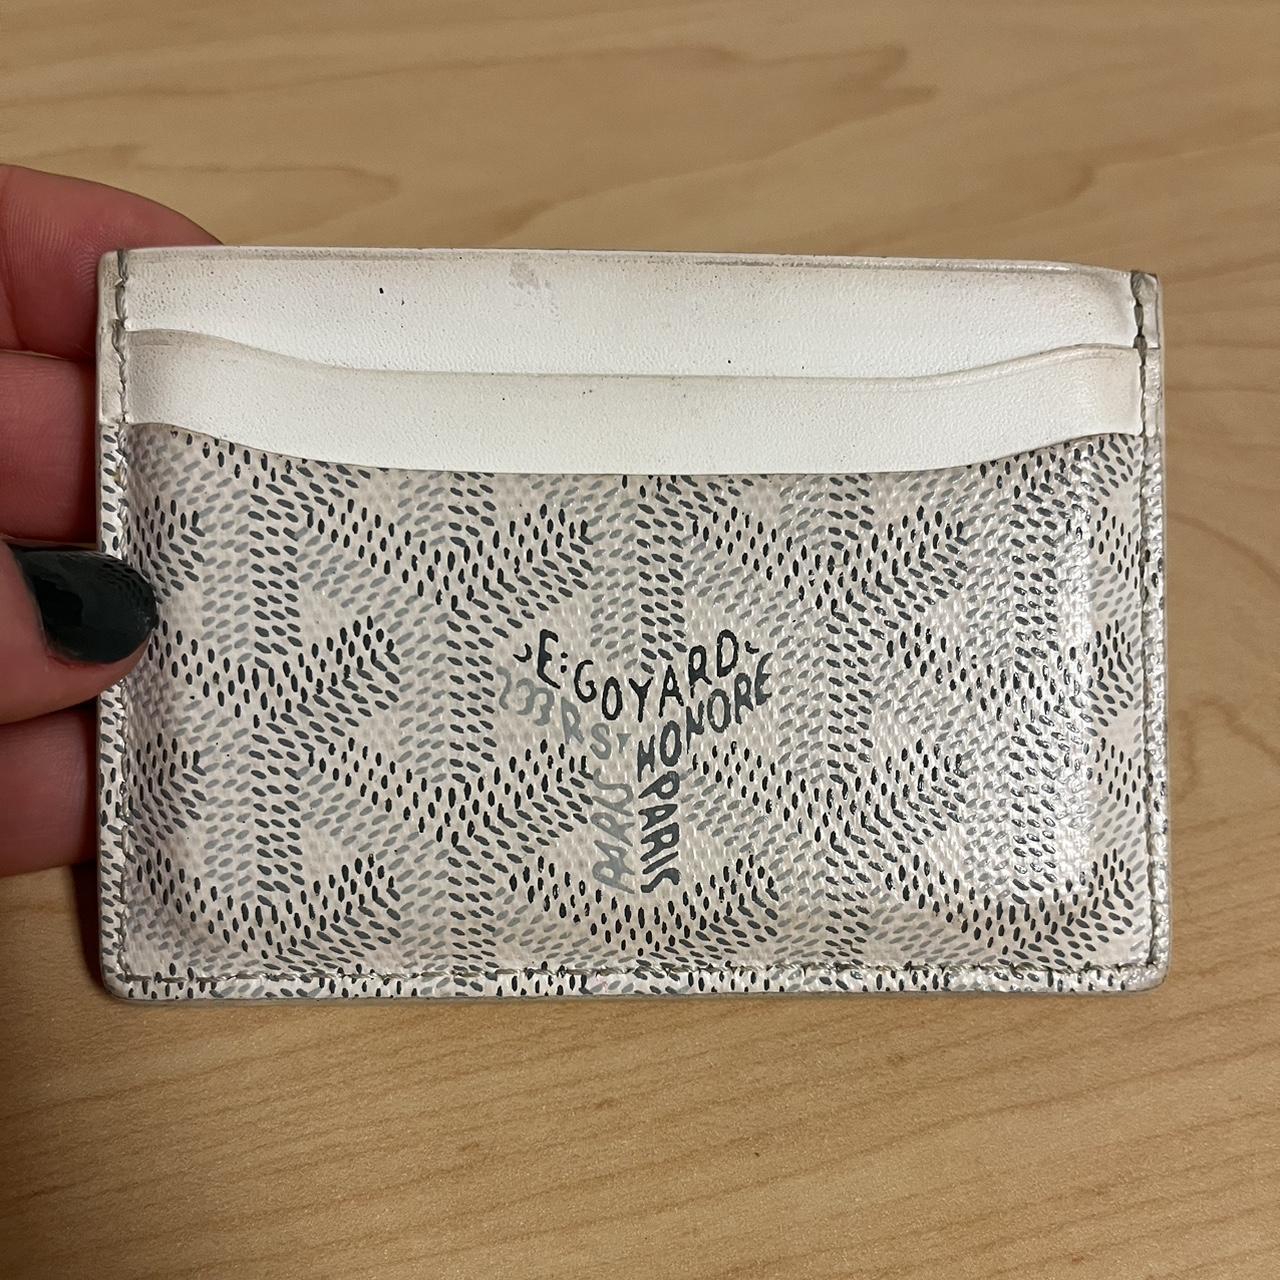 Goyard Women's Wallet